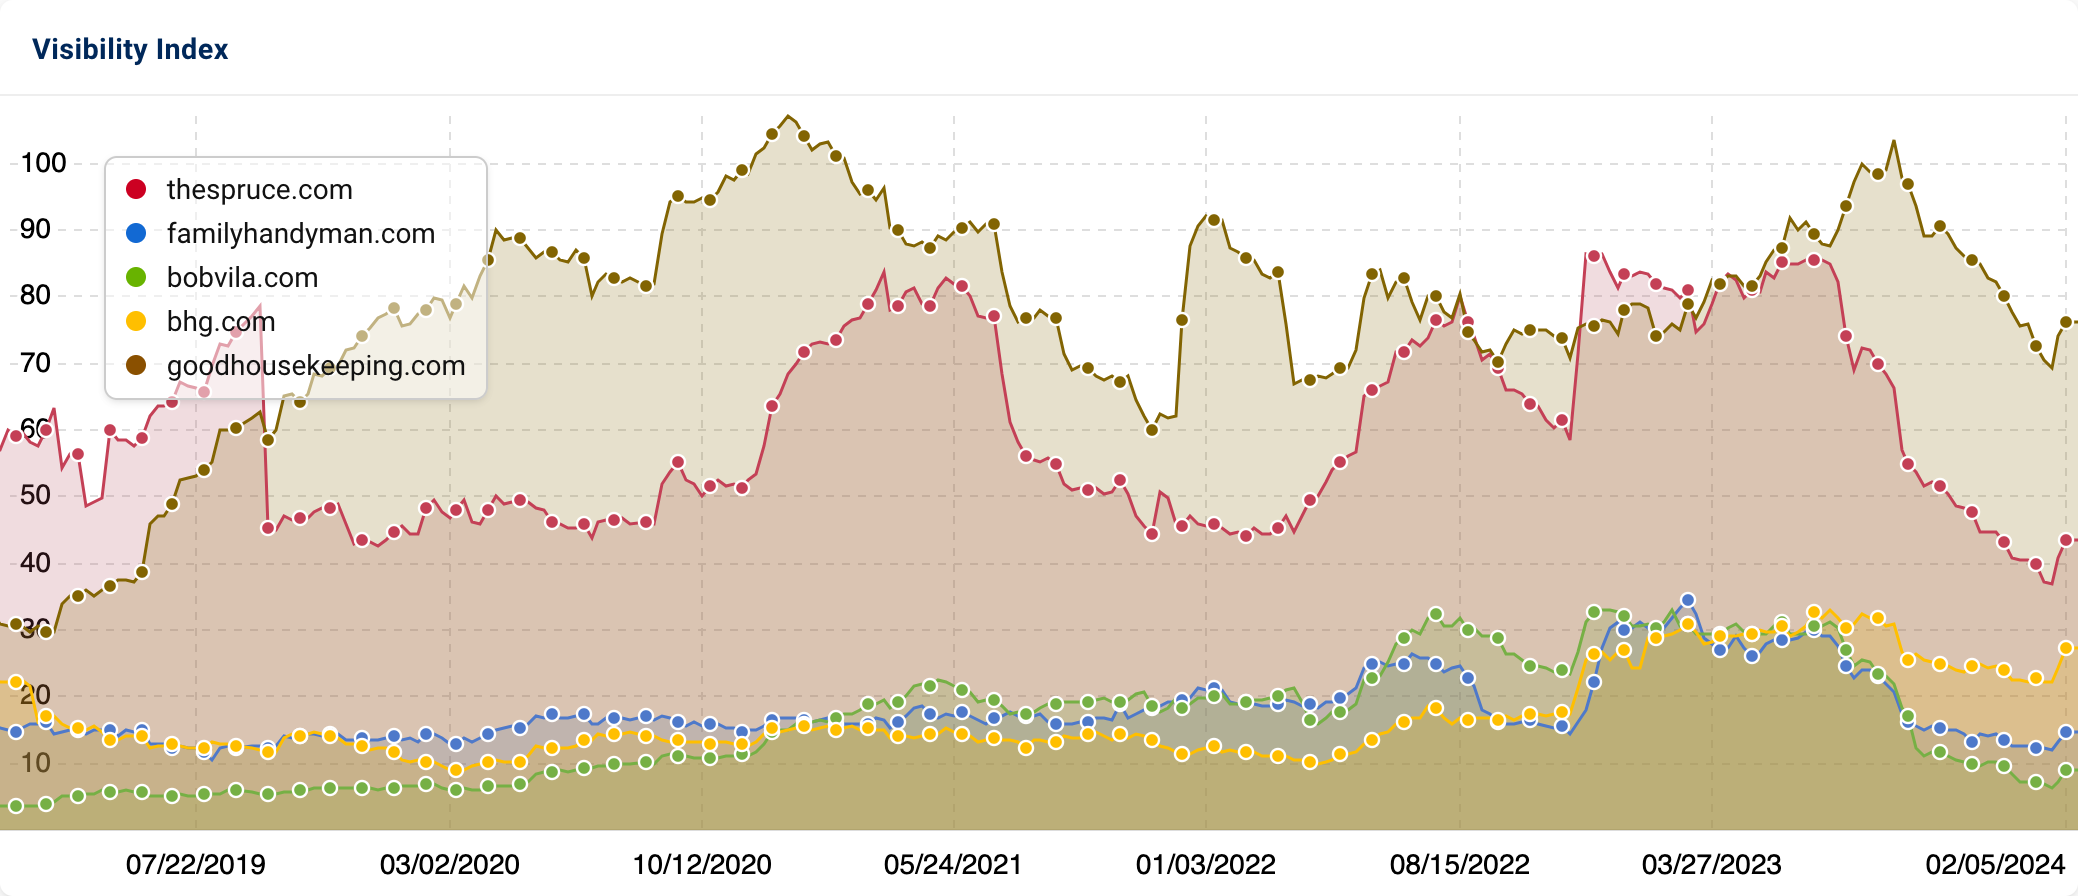 The comparison of the Visibility Index of the domains thespruce.com, familyhandyman.com, bobvila.com, bhg.com and goodhousekeeping.com.